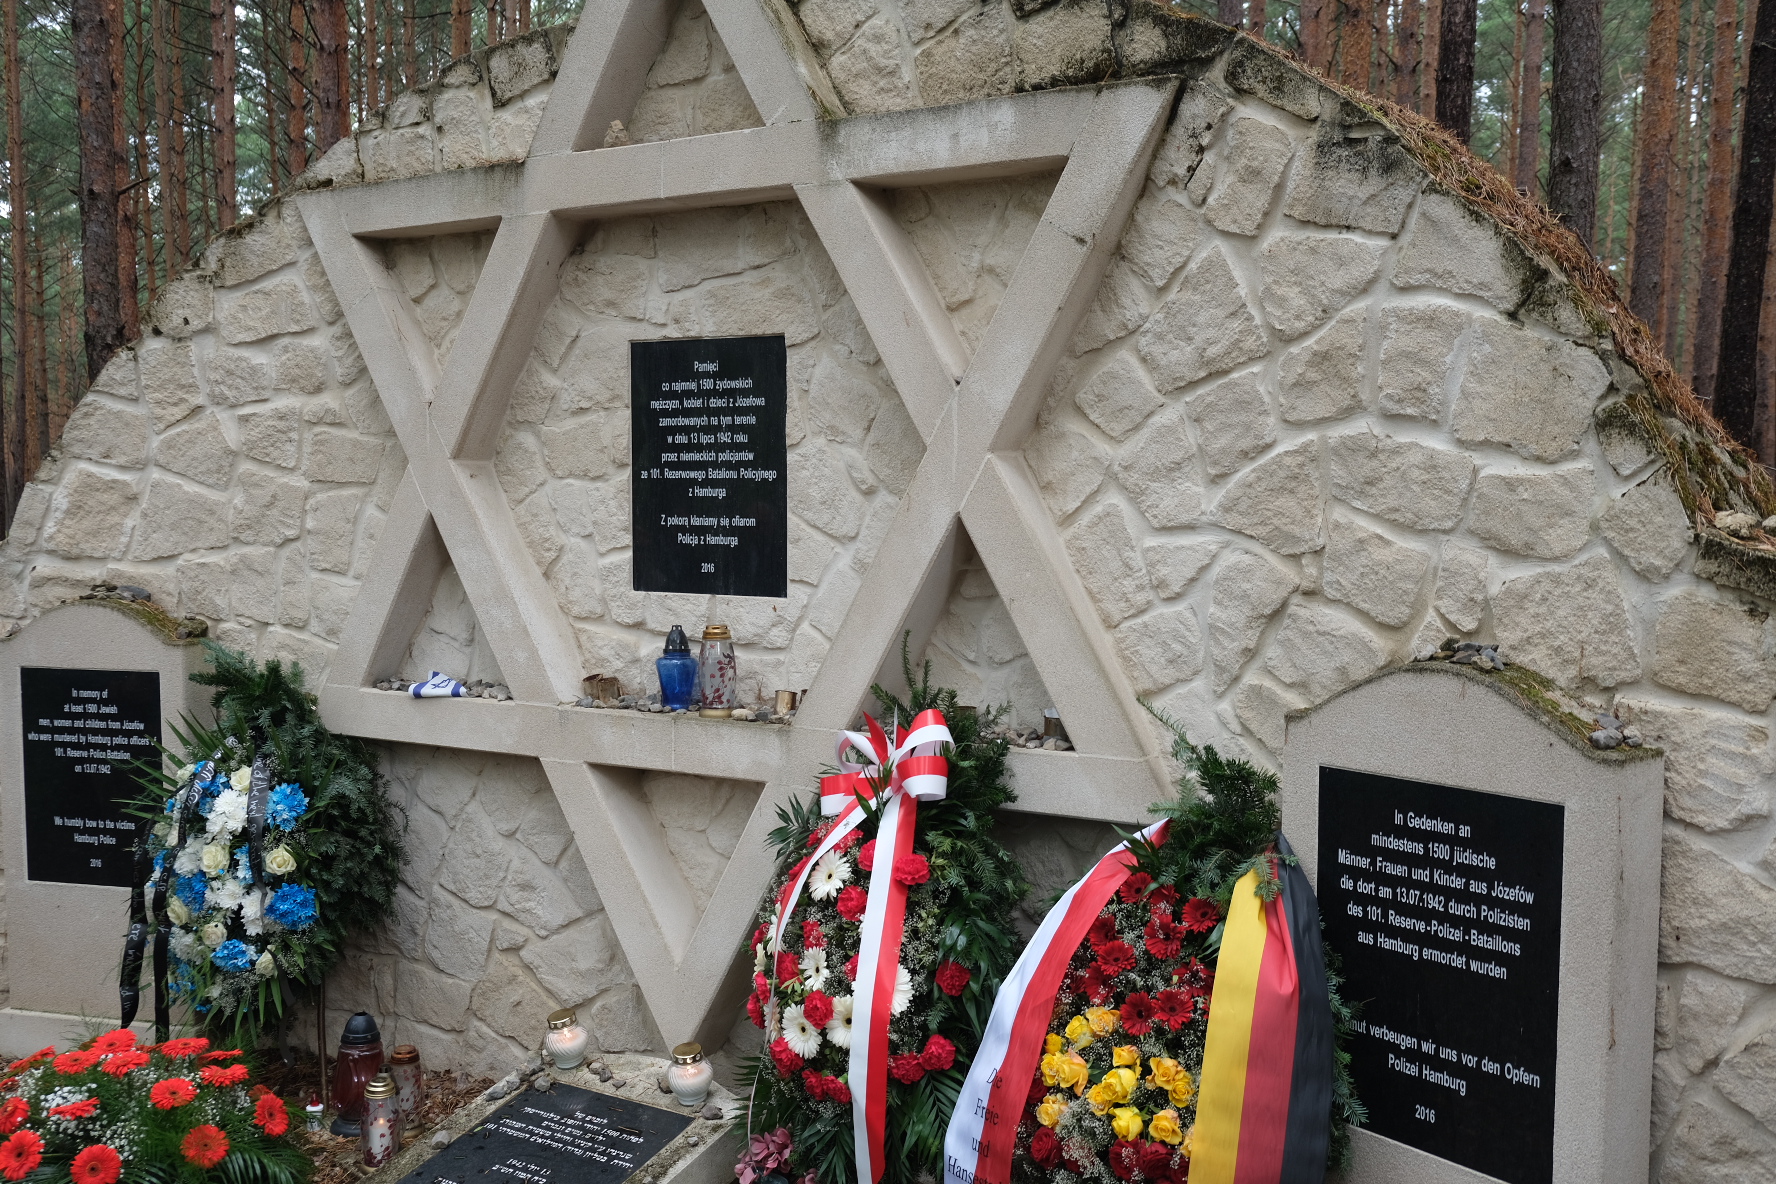 Innensenator Andy Grote und Hamburgs Bevollmächtigte Almut Möller erinnern in Polen an Ermordung jüdischer Zivilisten durch Hamburger Polizeibataillon vor 80 Jahren